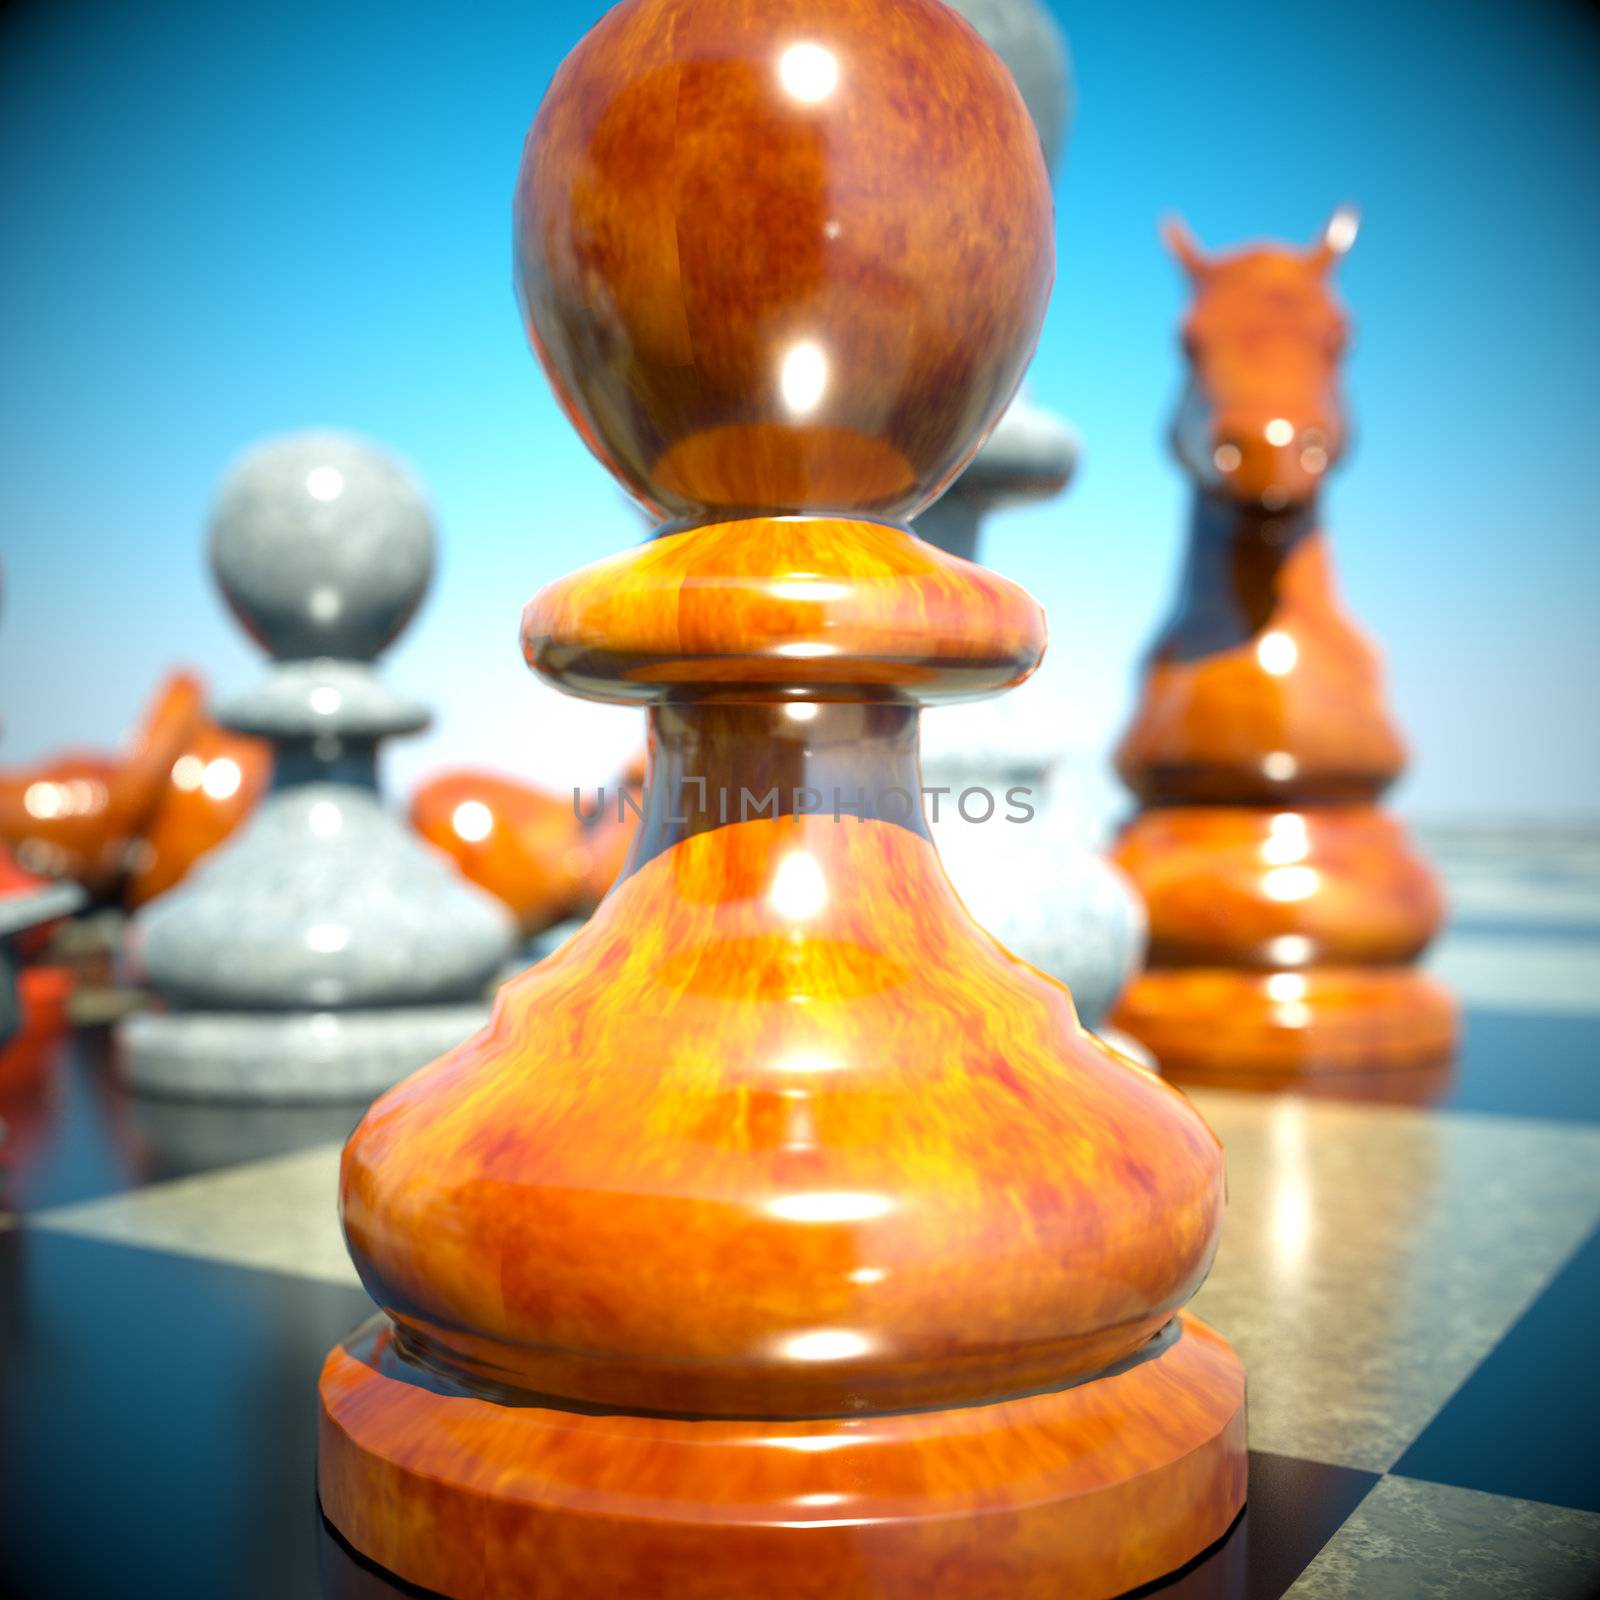 Chess battle -defeat